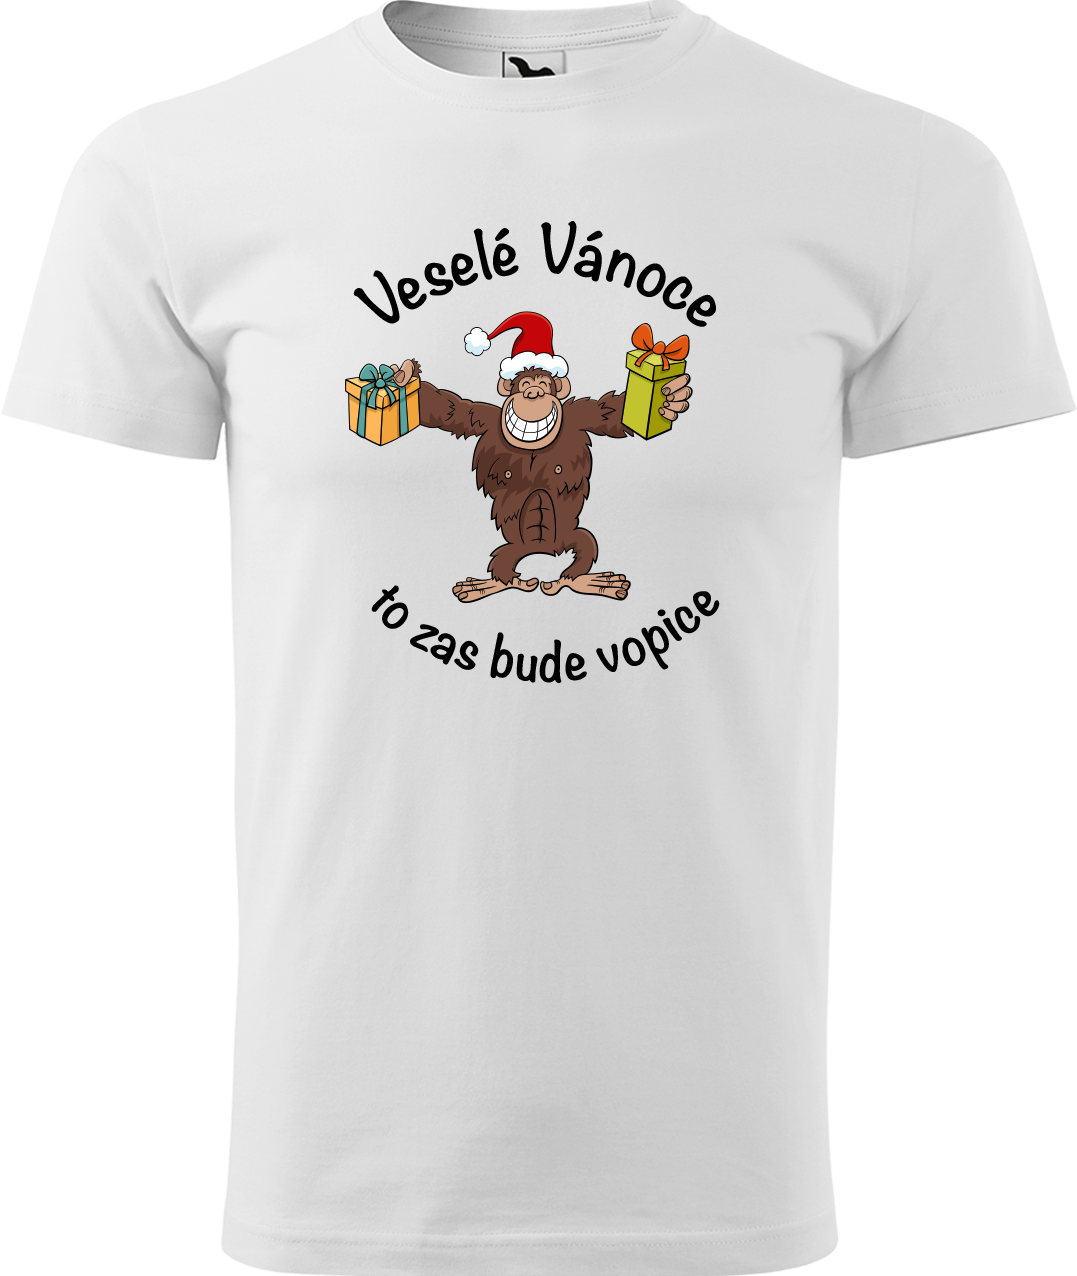 Pánské vánoční tričko - Veselé Vánoce to zas bude vopice (hnědý opičák) Velikost: S, Barva: Bílá (00)